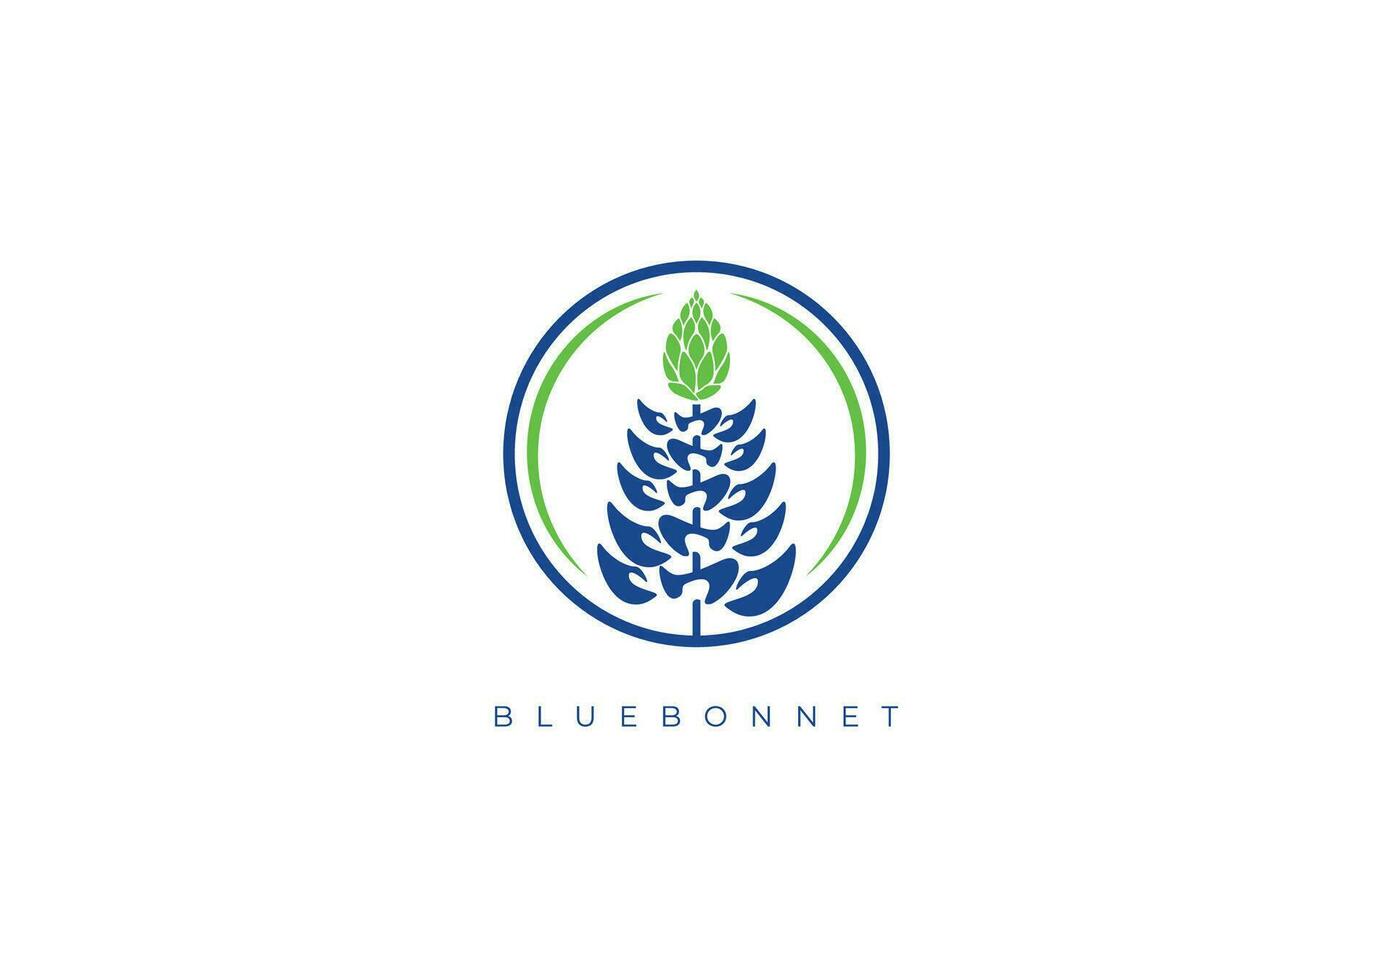 Bluebonnet blomma logotyp vektor